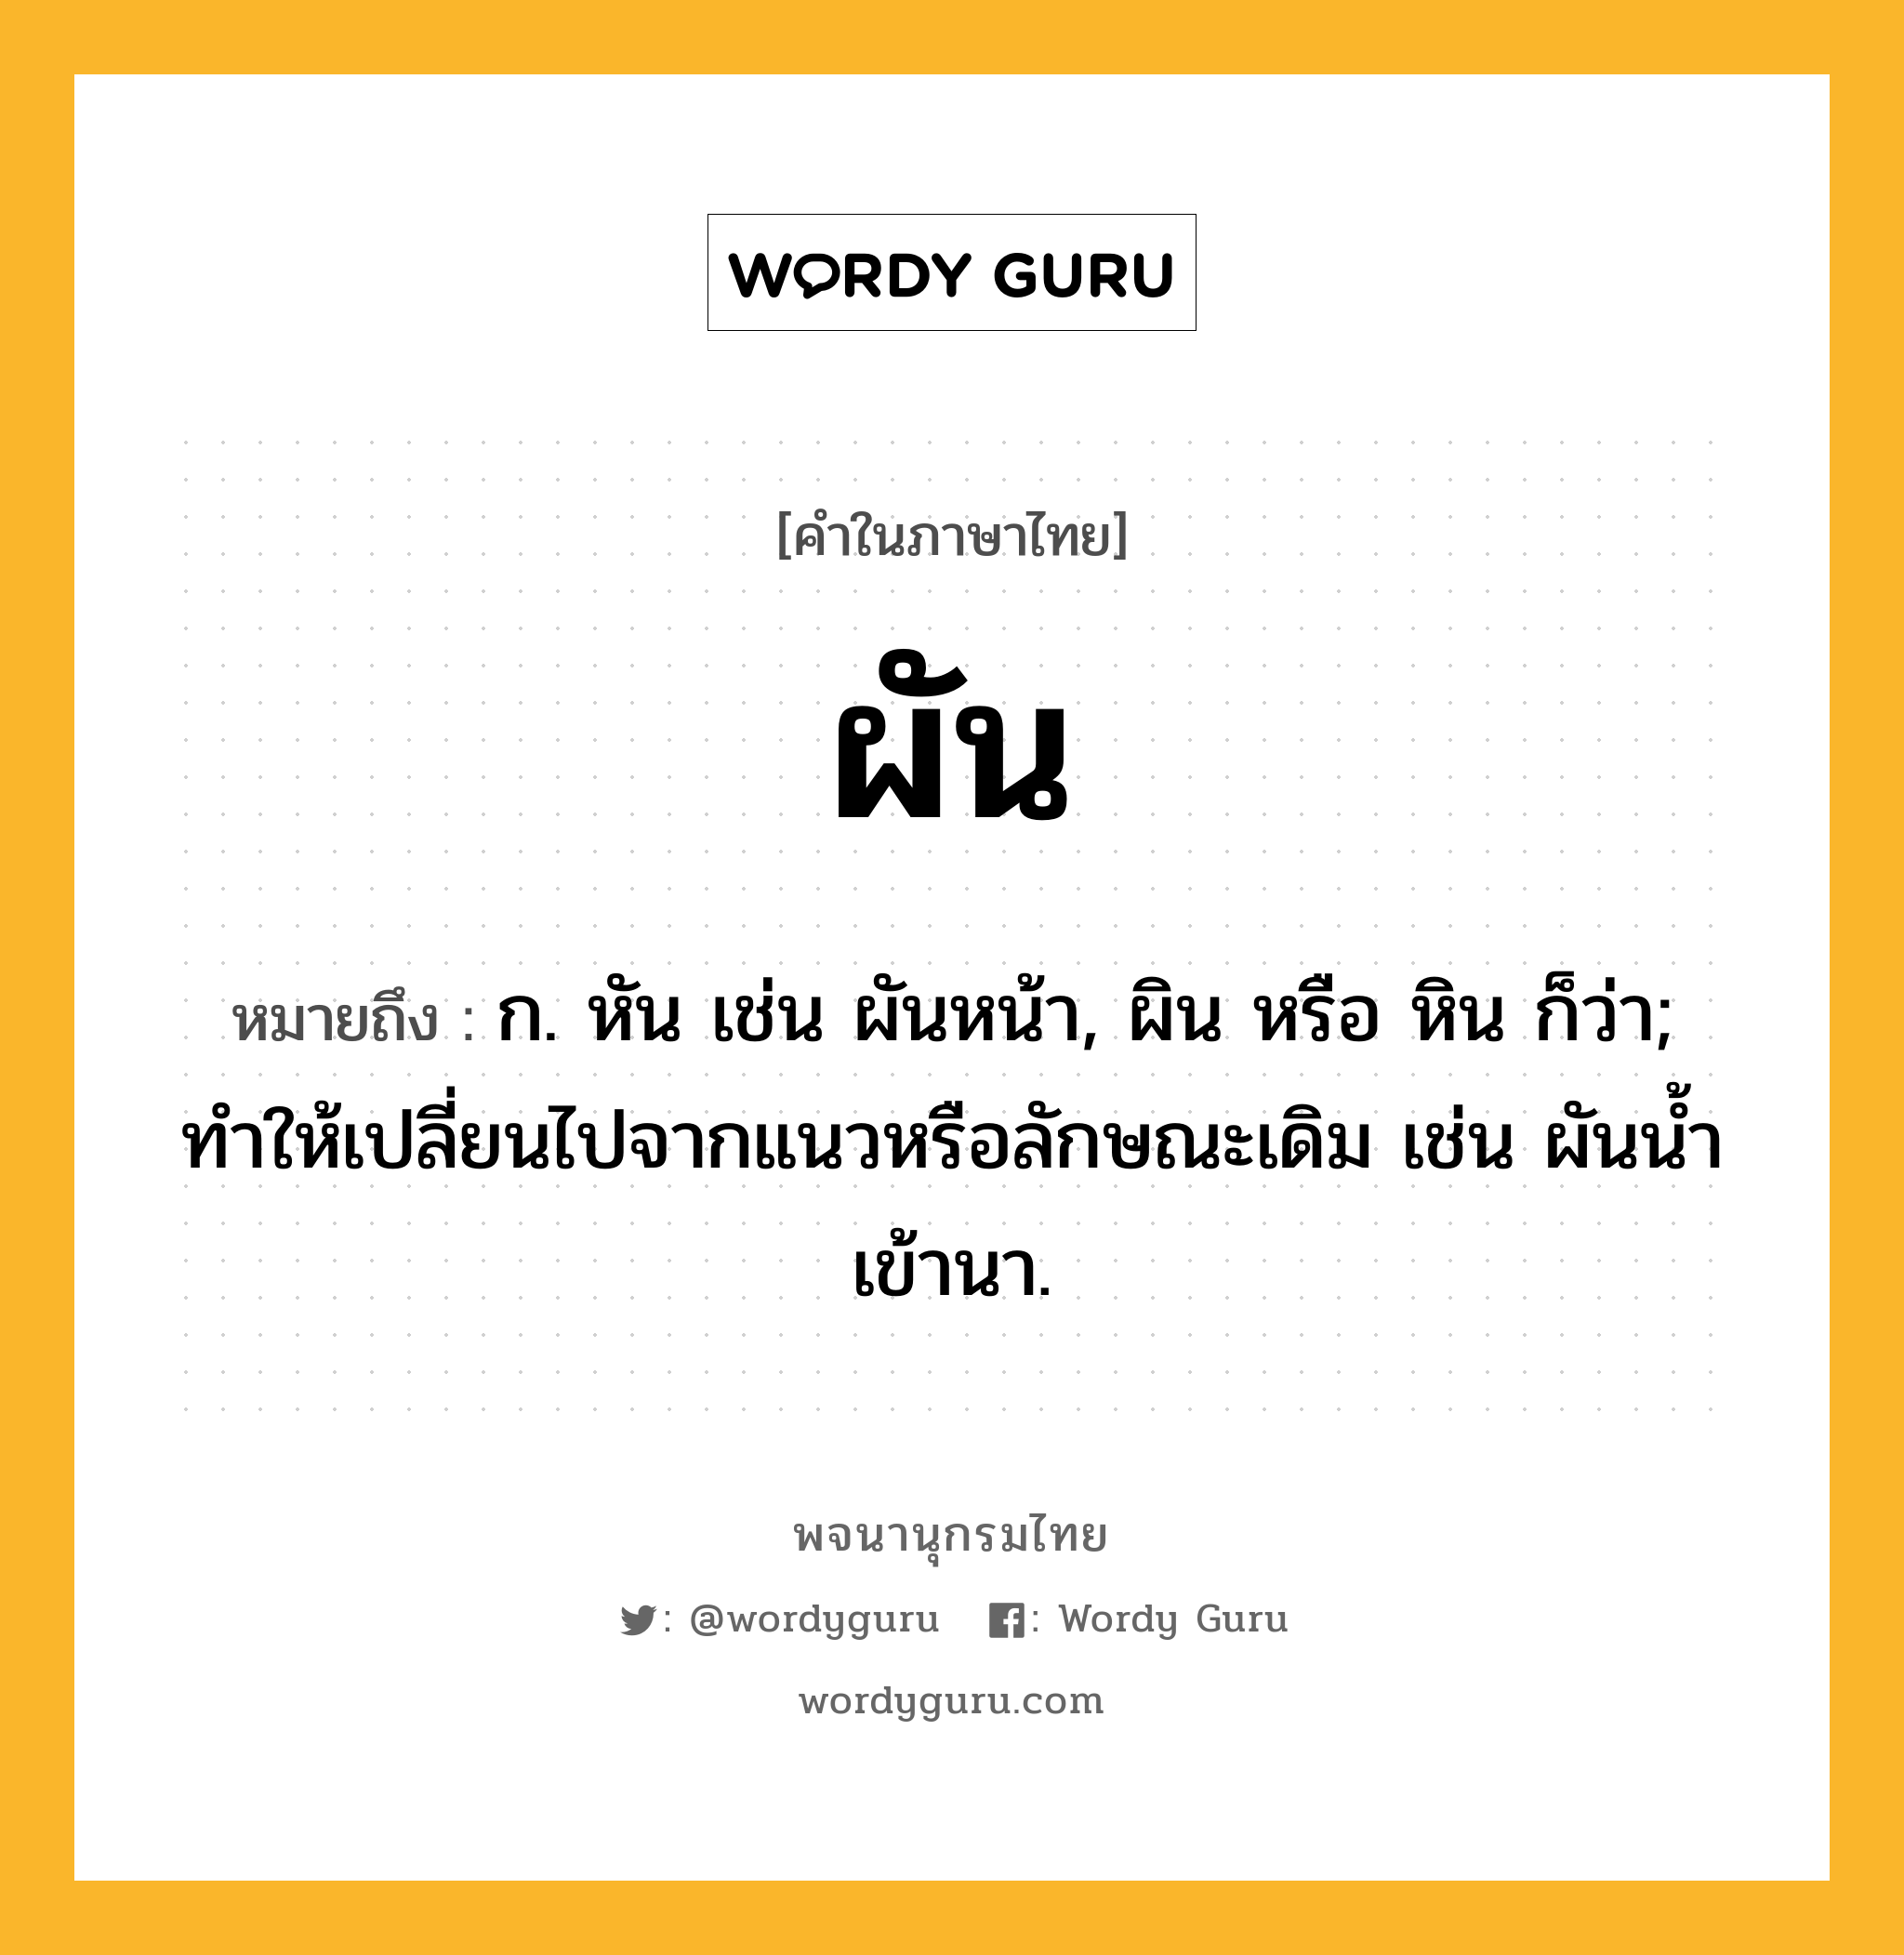 ผัน ความหมาย หมายถึงอะไร?, คำในภาษาไทย ผัน หมายถึง ก. หัน เช่น ผันหน้า, ผิน หรือ หิน ก็ว่า; ทำให้เปลี่ยนไปจากแนวหรือลักษณะเดิม เช่น ผันน้ำเข้านา.